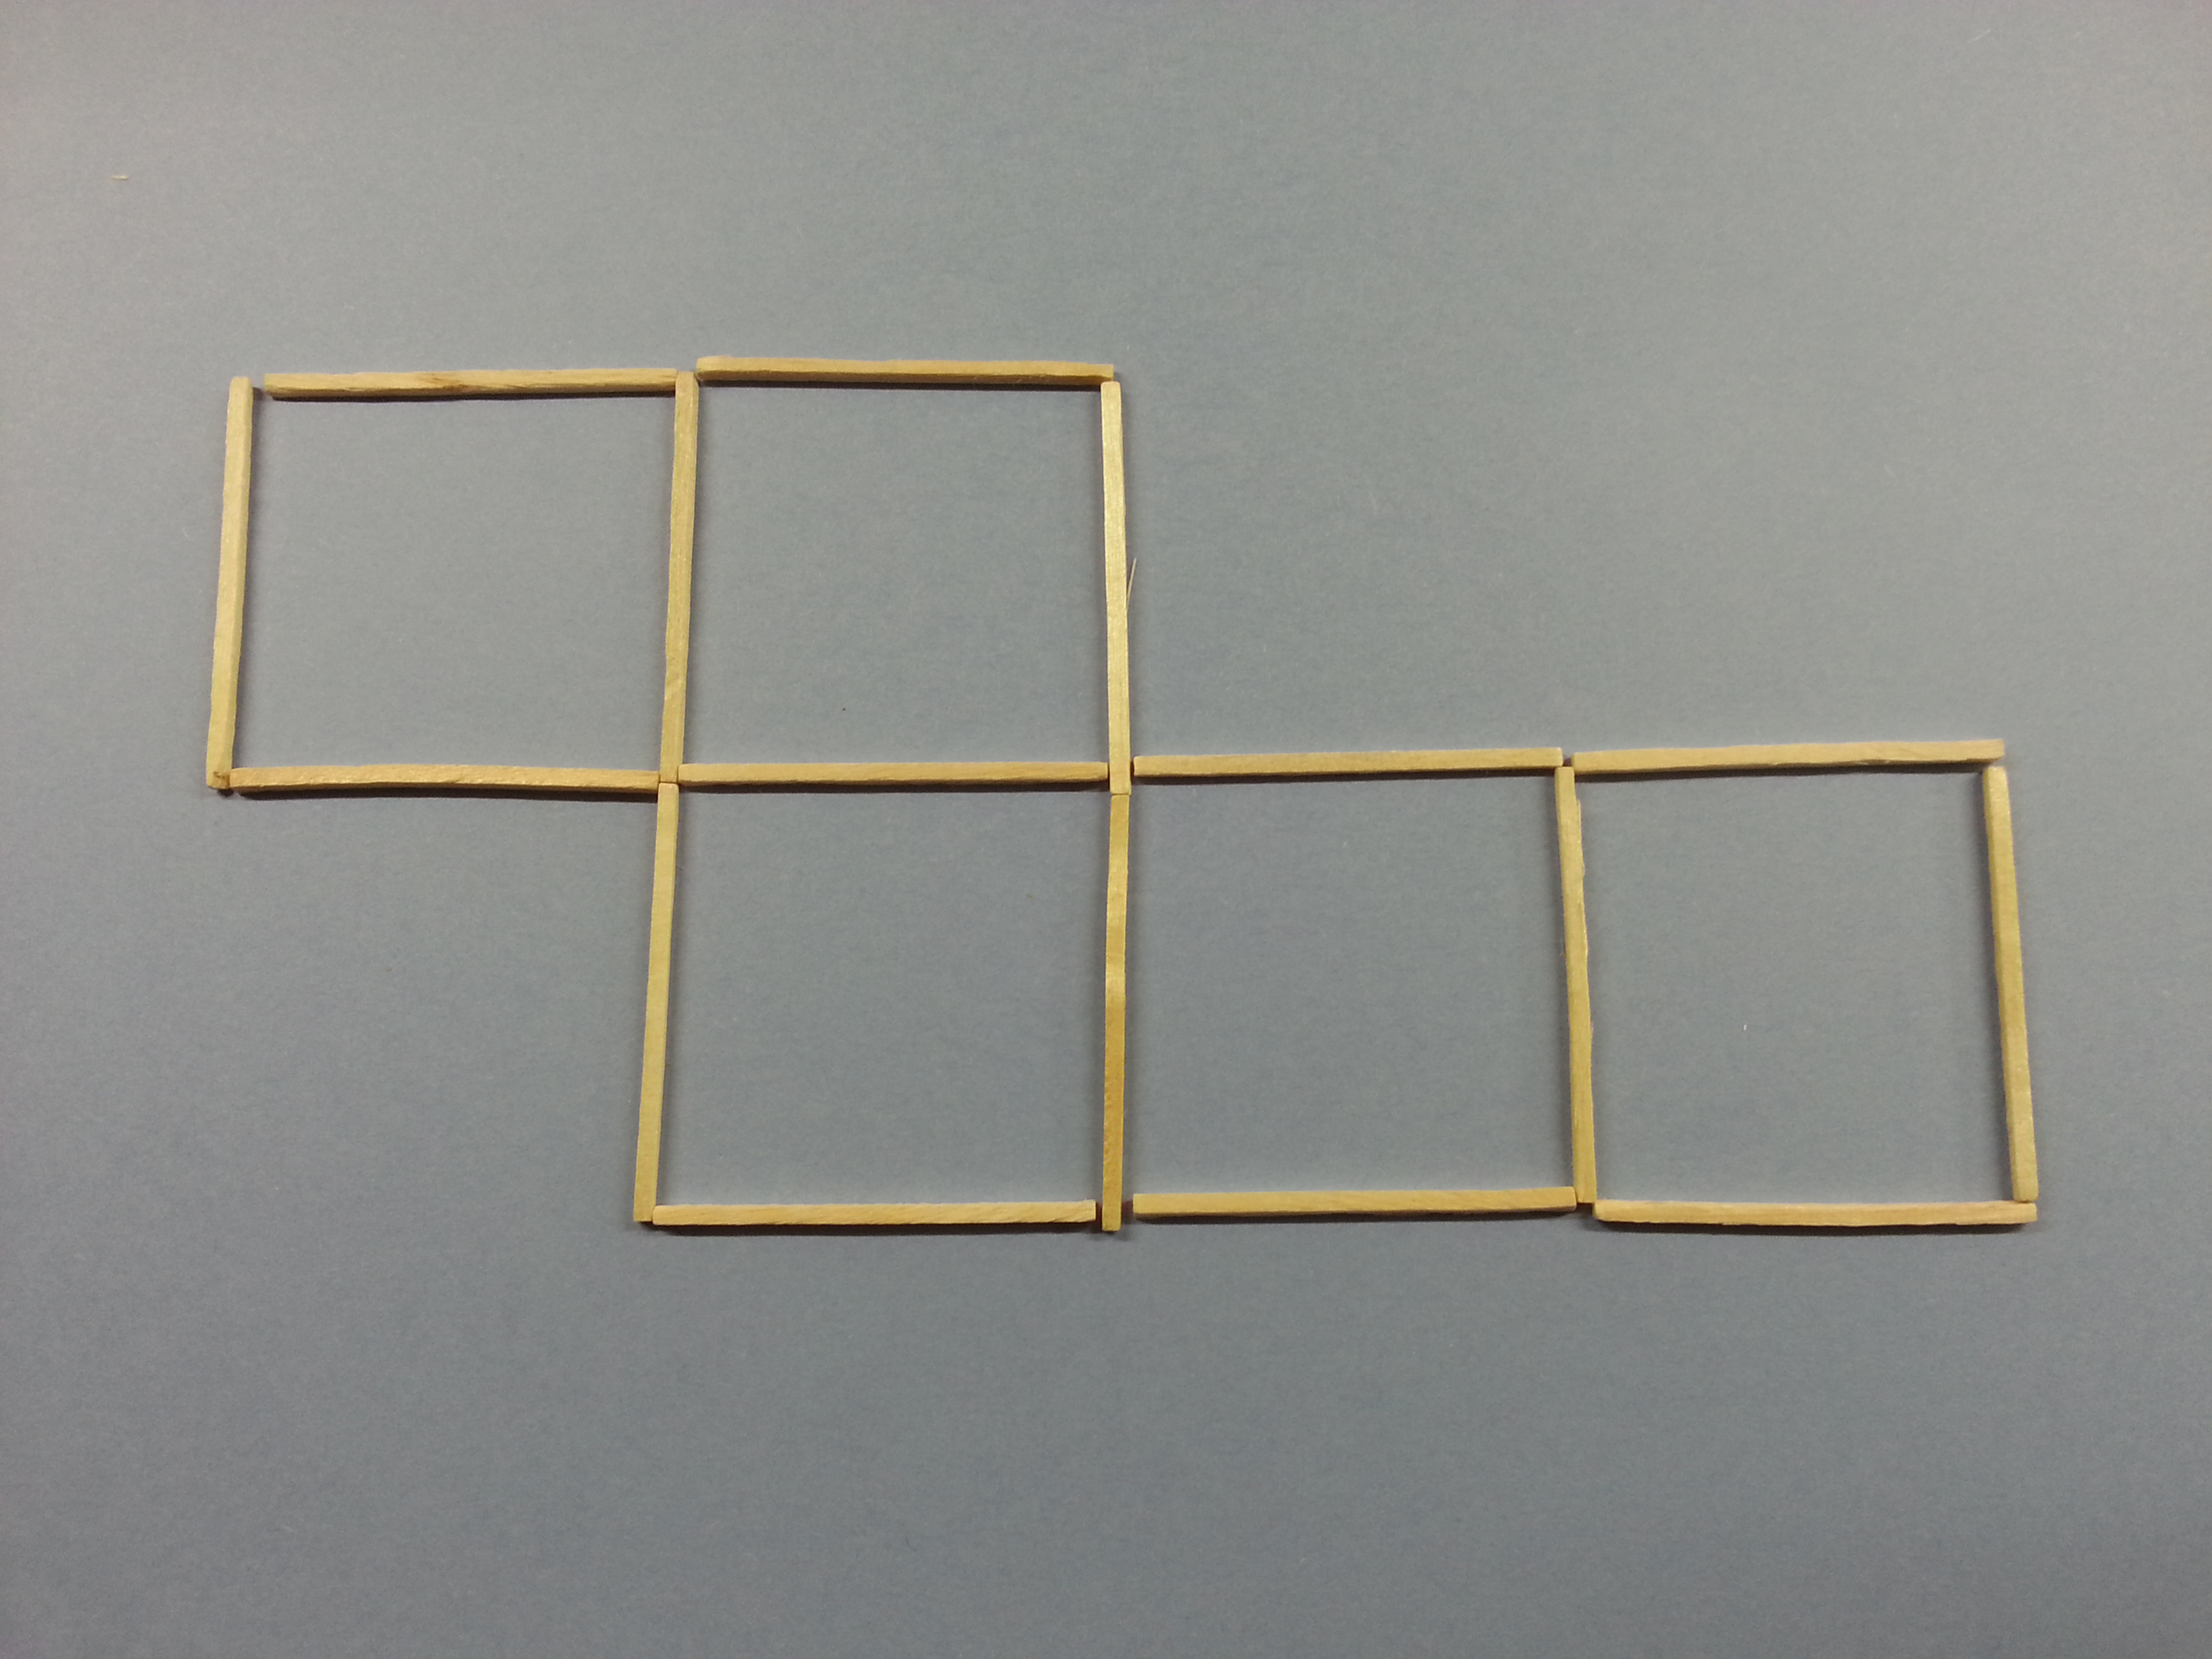 Match puzzle, five squares.